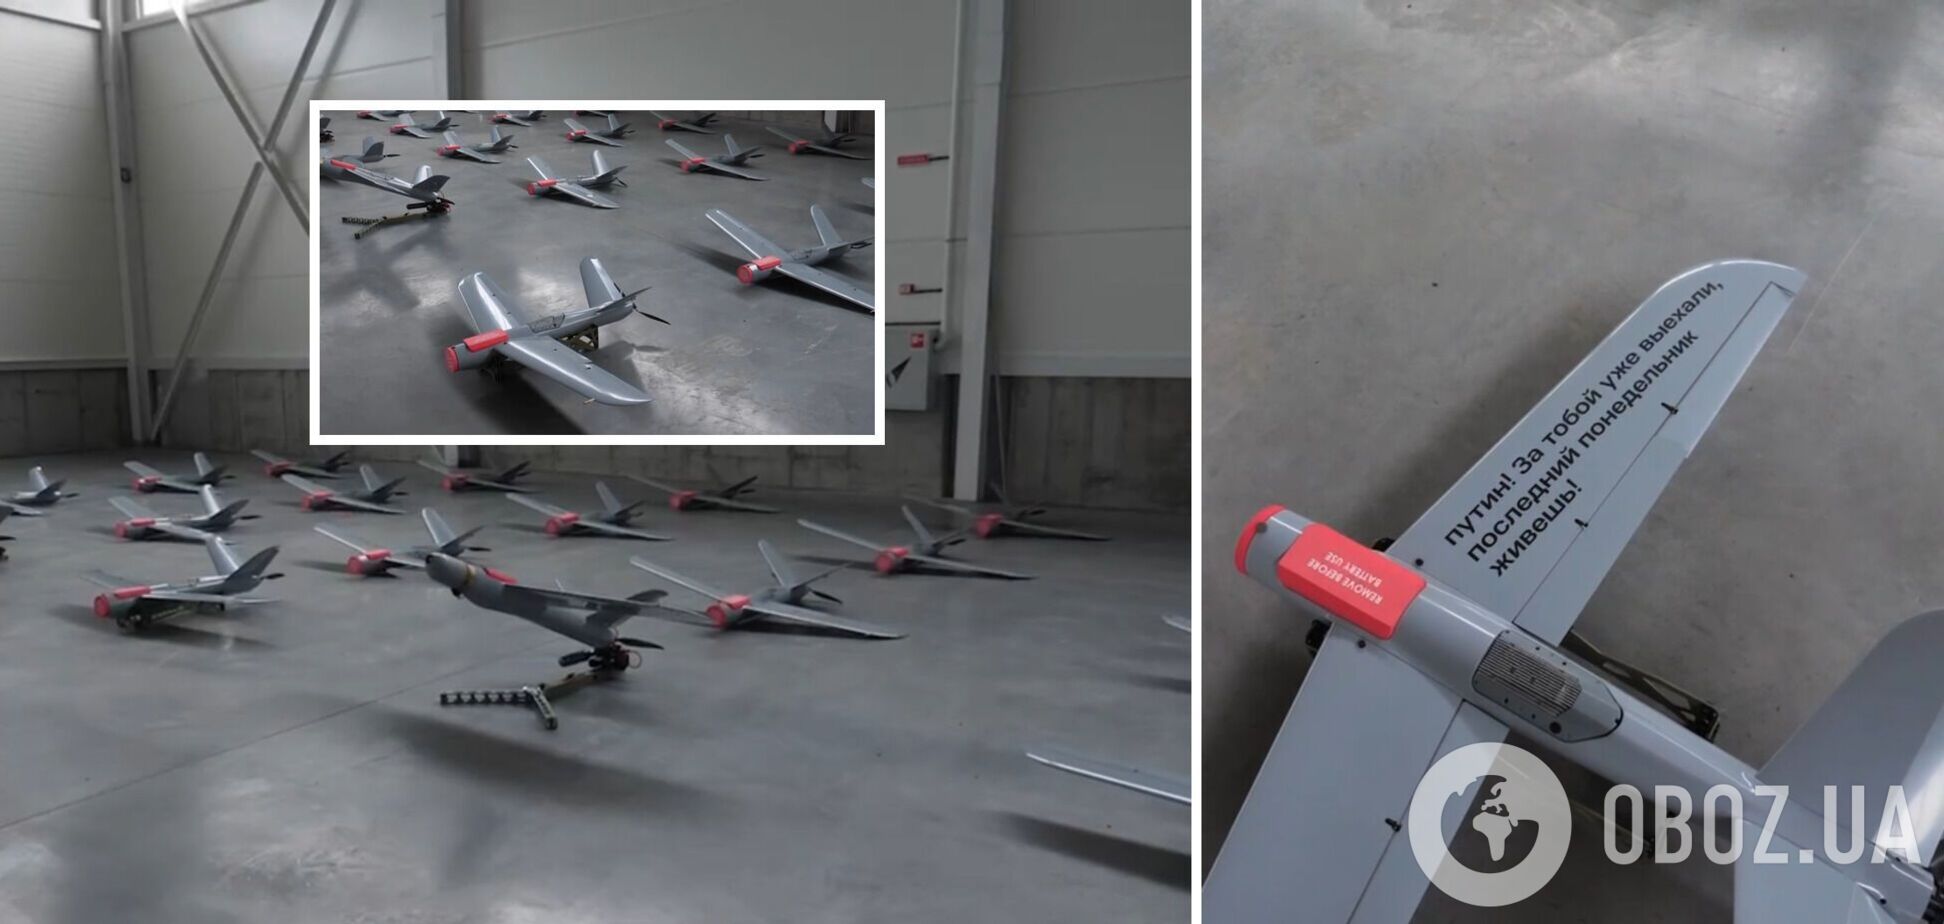 20 ударных дронов Warmate, приобретенных за народные средства, скоро отправятся на фронт, – министр Федоров